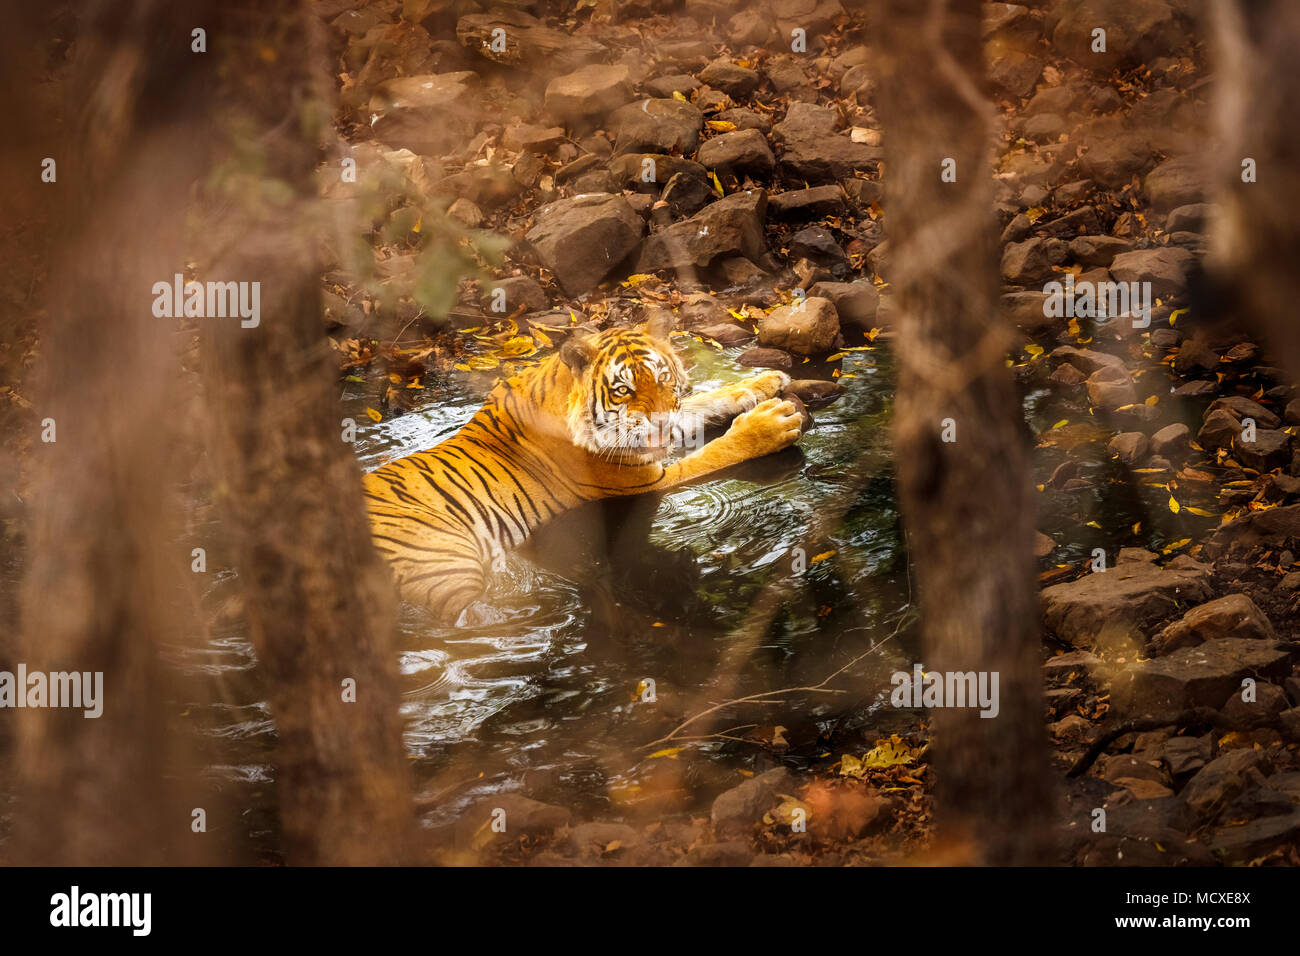 Knurrend Bengal Tiger (Panthera tigris) zur Kühlung in einem Wasserloch teilweise verdeckt, Ranthambore Nationalpark, Rajasthan, Nordindien Stockfoto